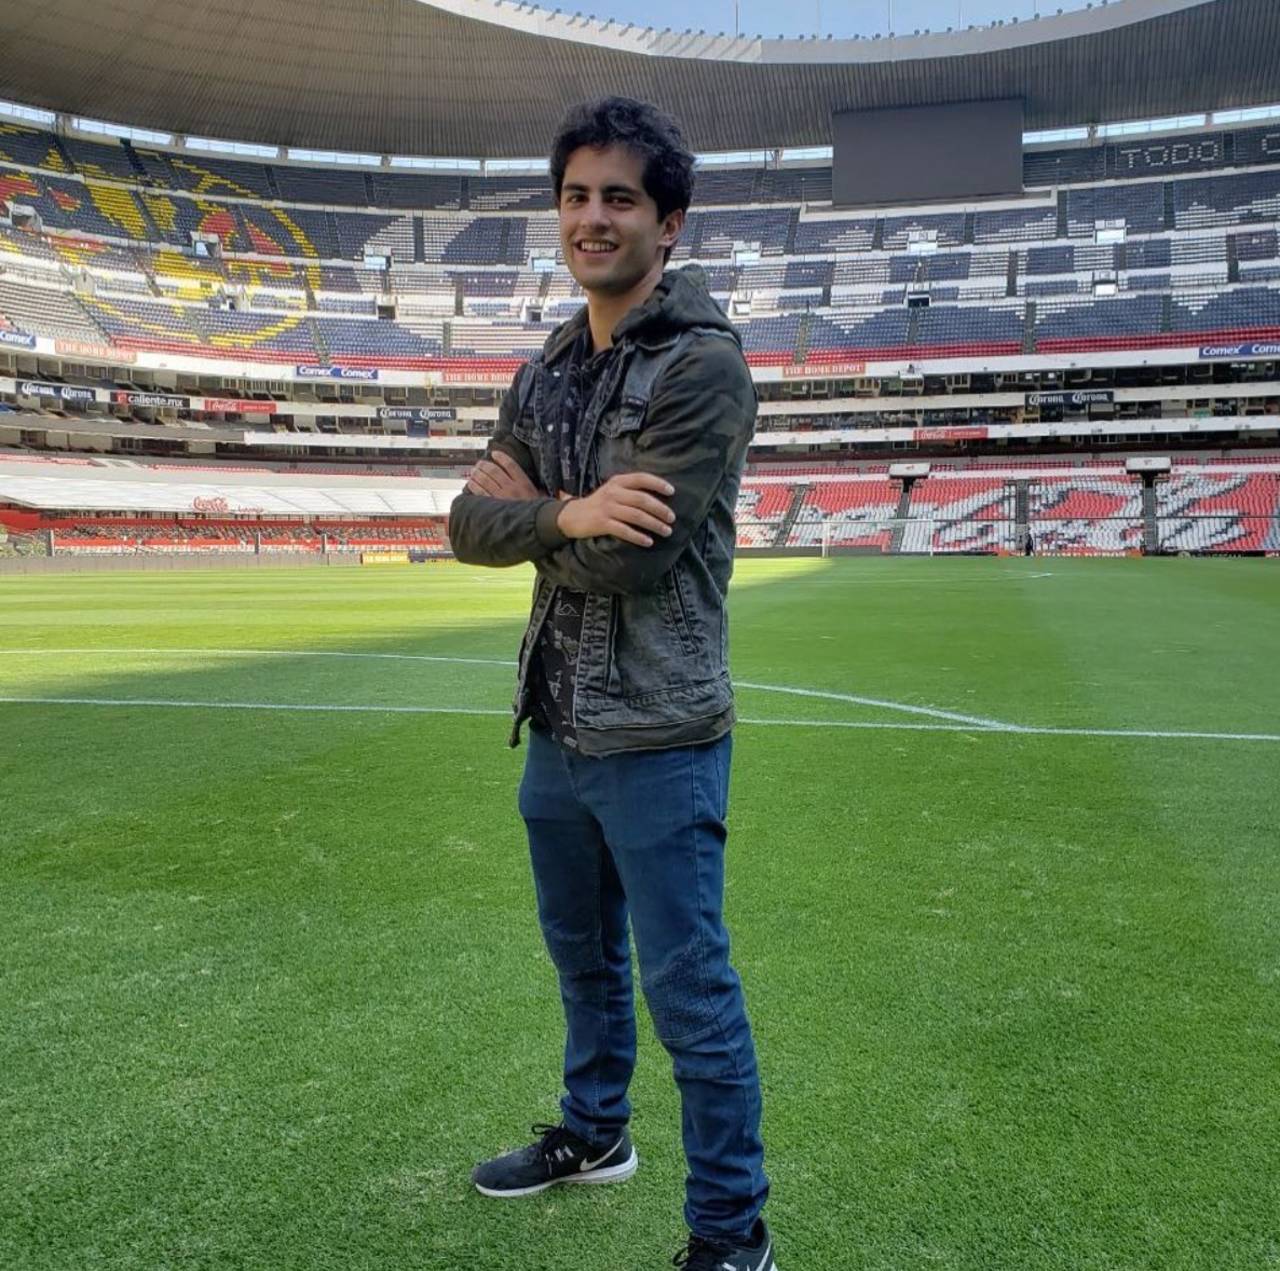 Personaje. El actor Enrique Arrizon participa en la telenovela La jefa del campeón, dando vida a un joven futbolista. (ARCHIVO)